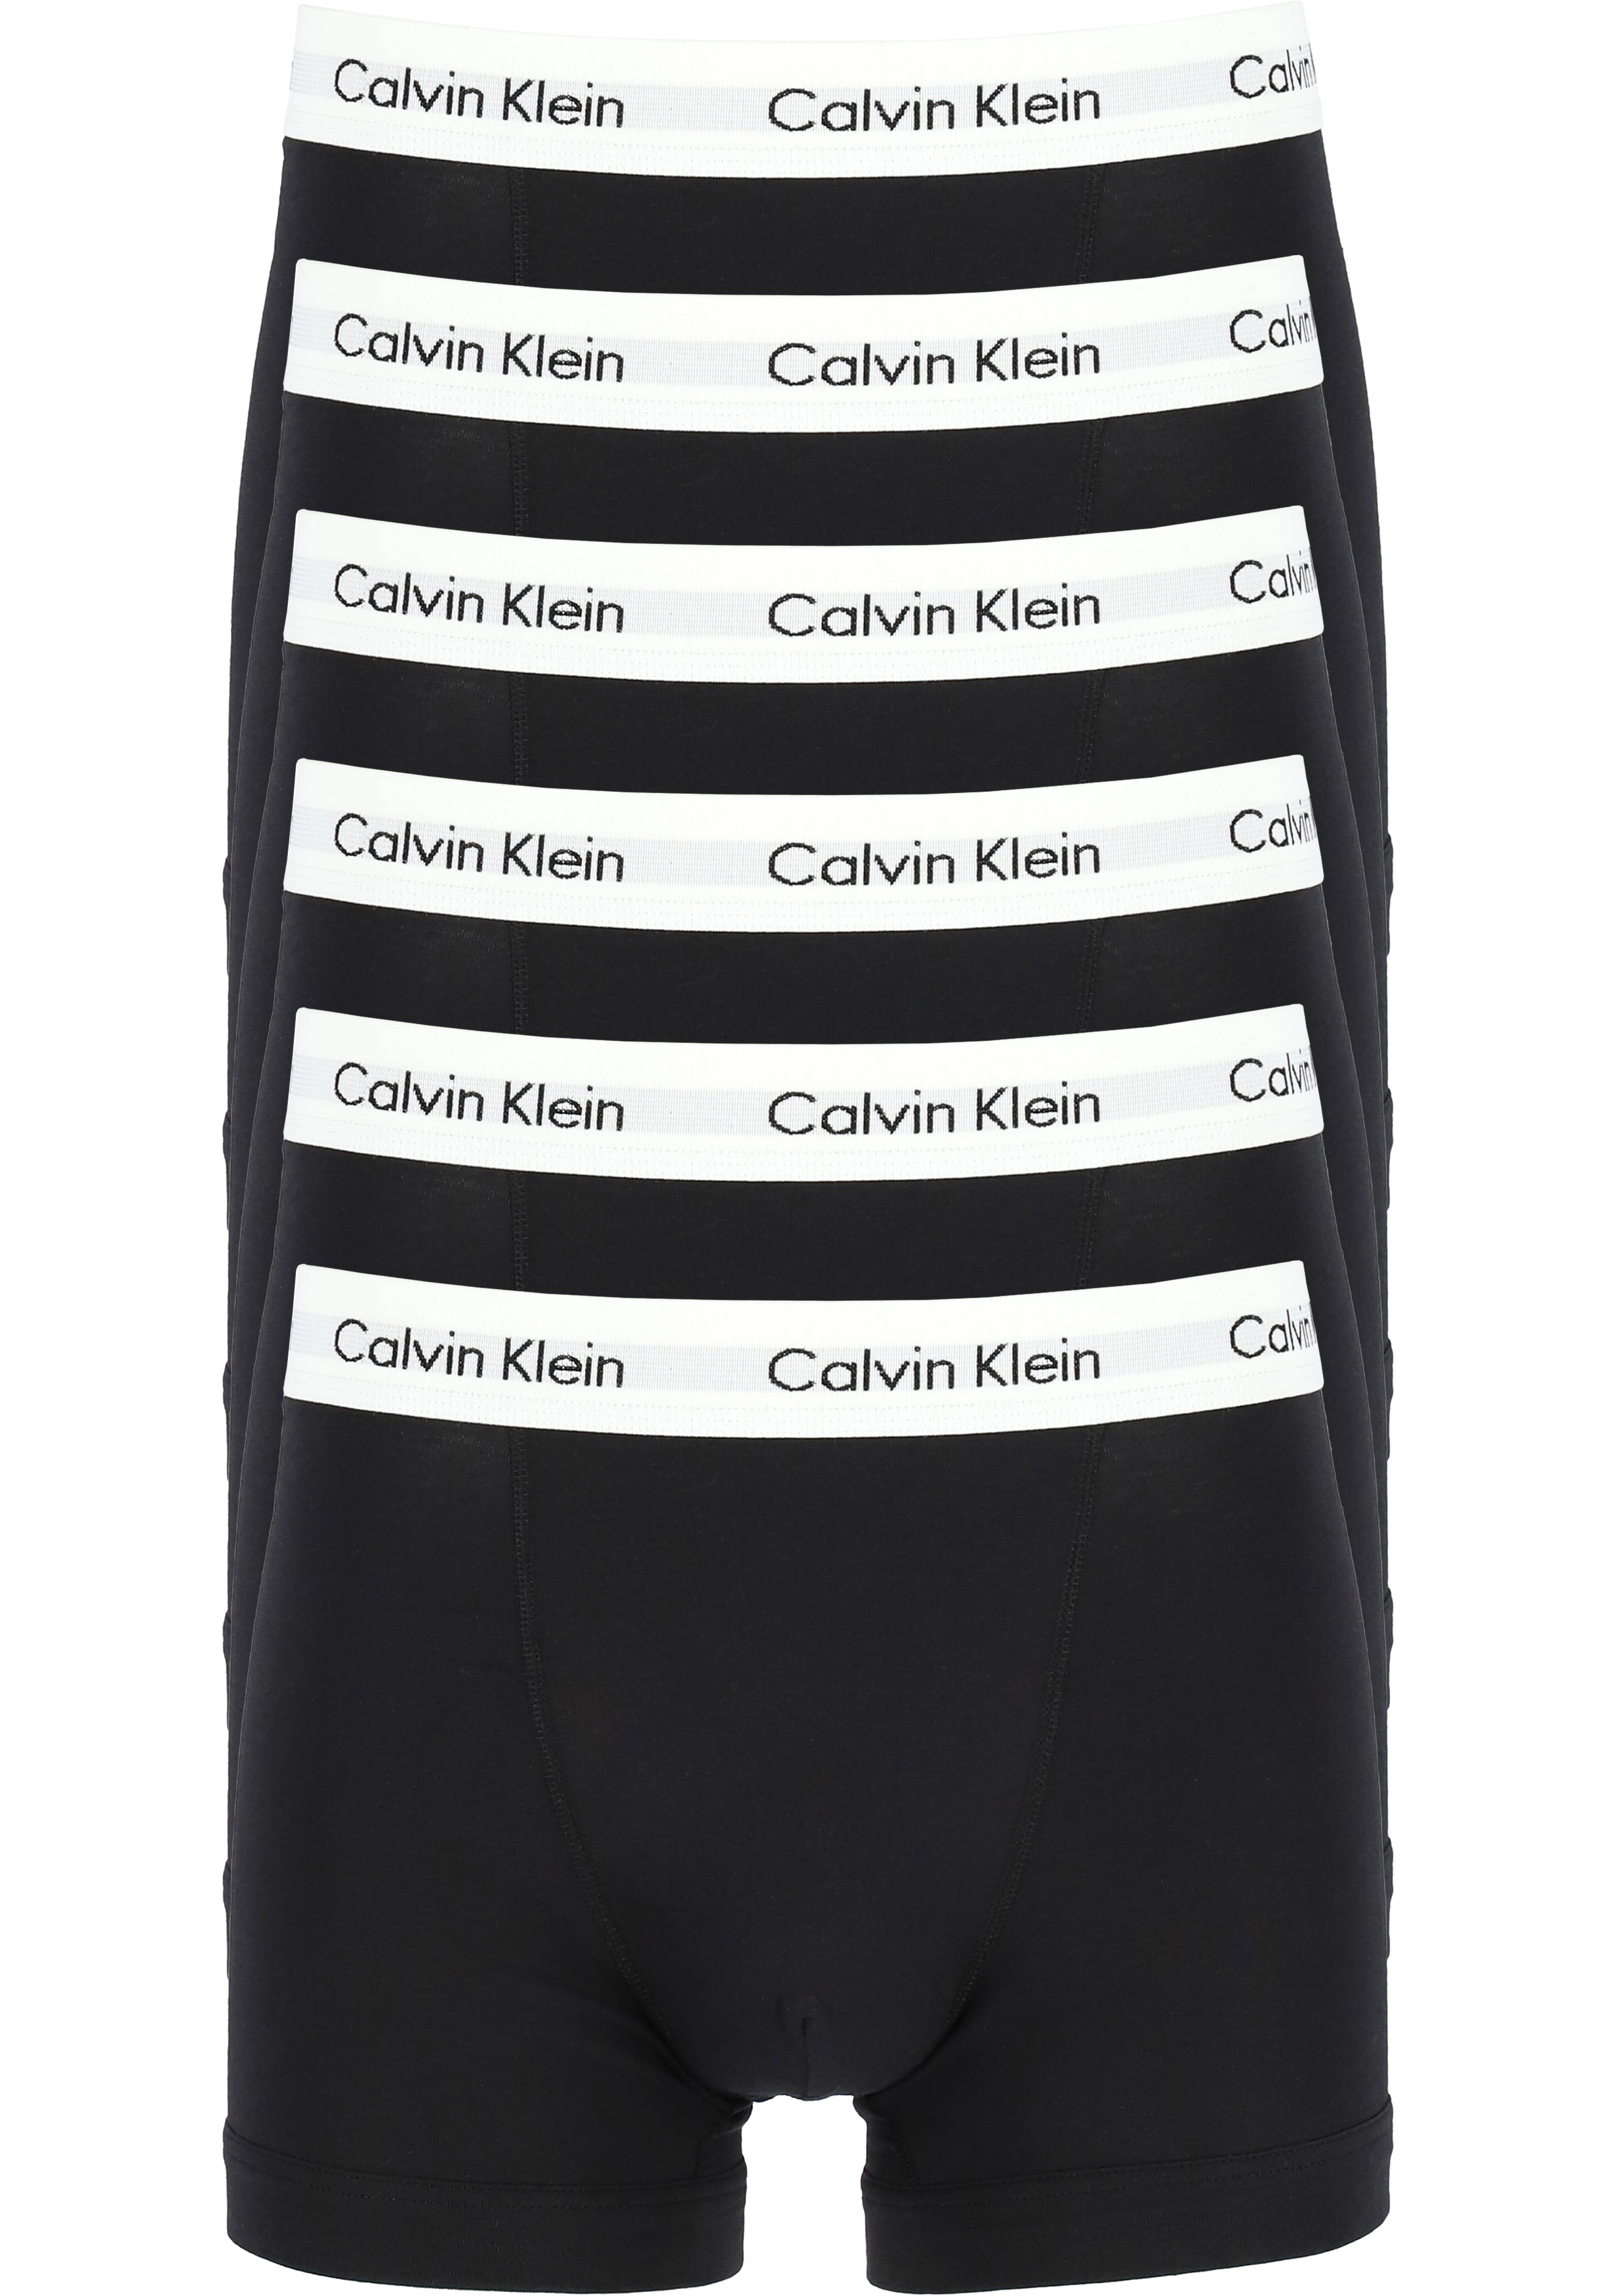 Ik heb een Engelse les Informeer vervolging Actie 6-pack: Calvin Klein trunks, heren boxers normale lengte, zwart -  Shop de nieuwste voorjaarsmode